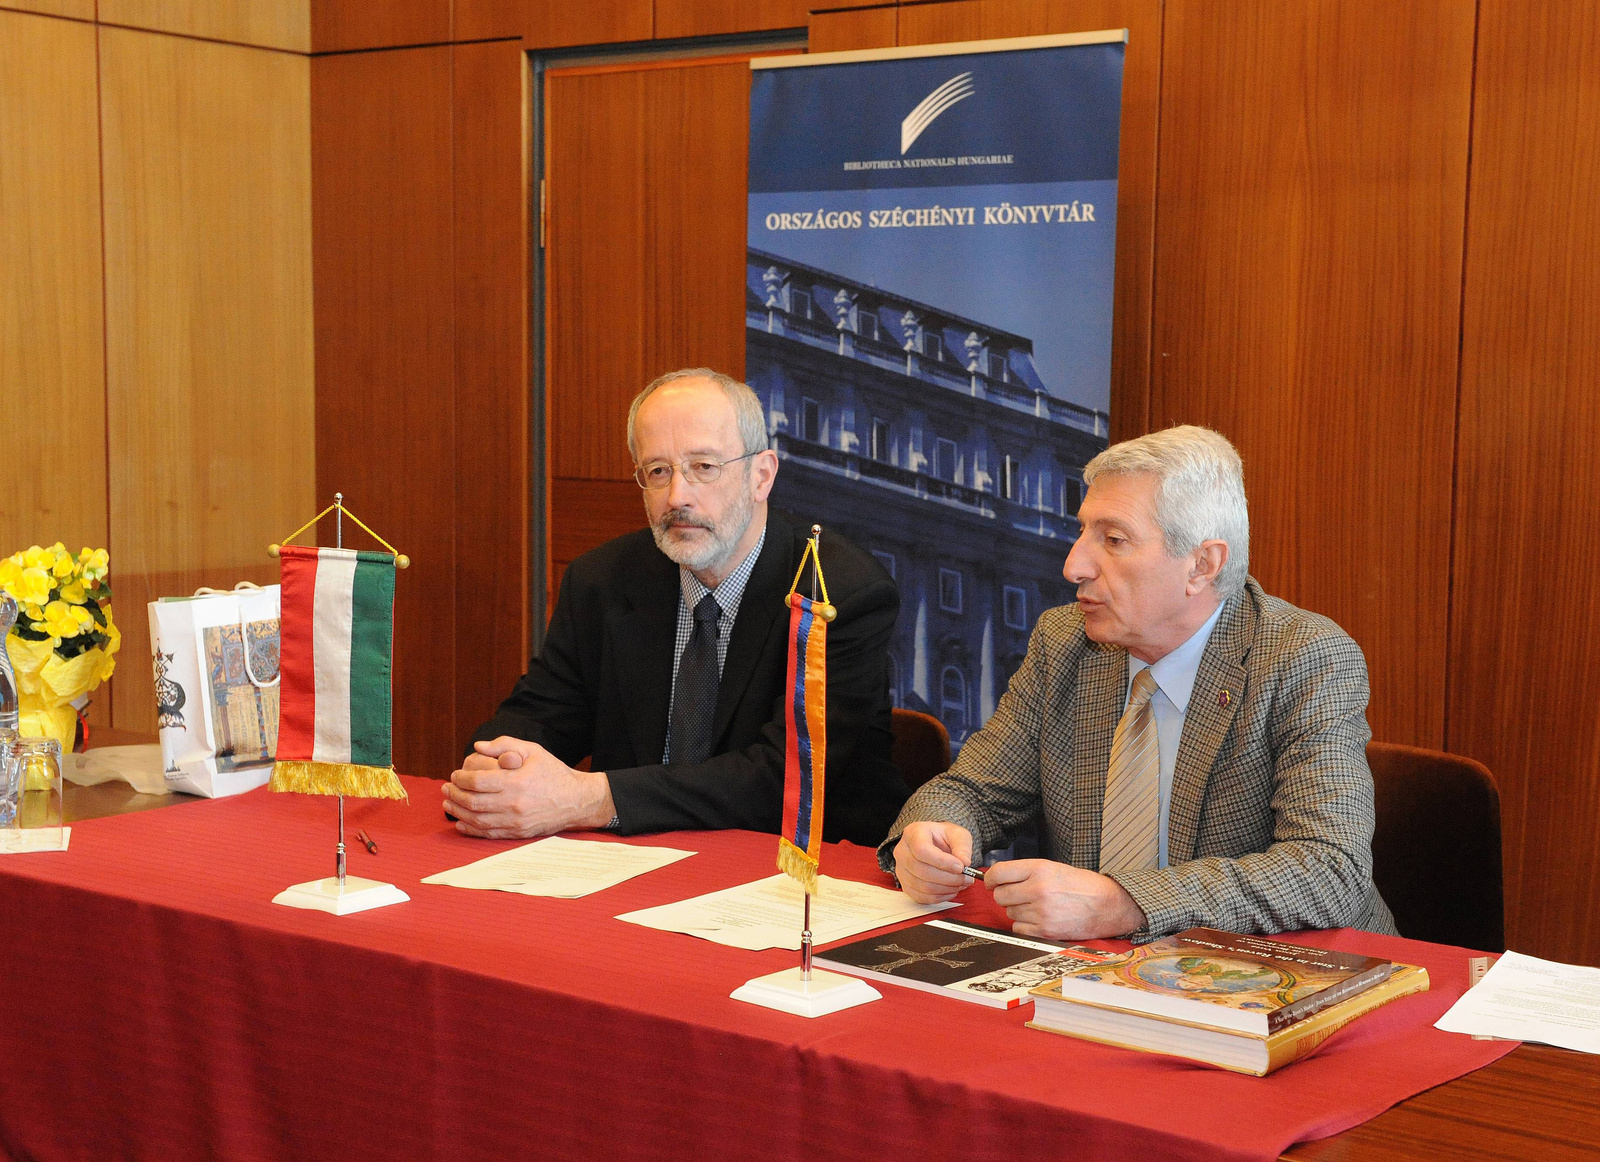 Együttműködés az örmény nemzeti könyvtárral